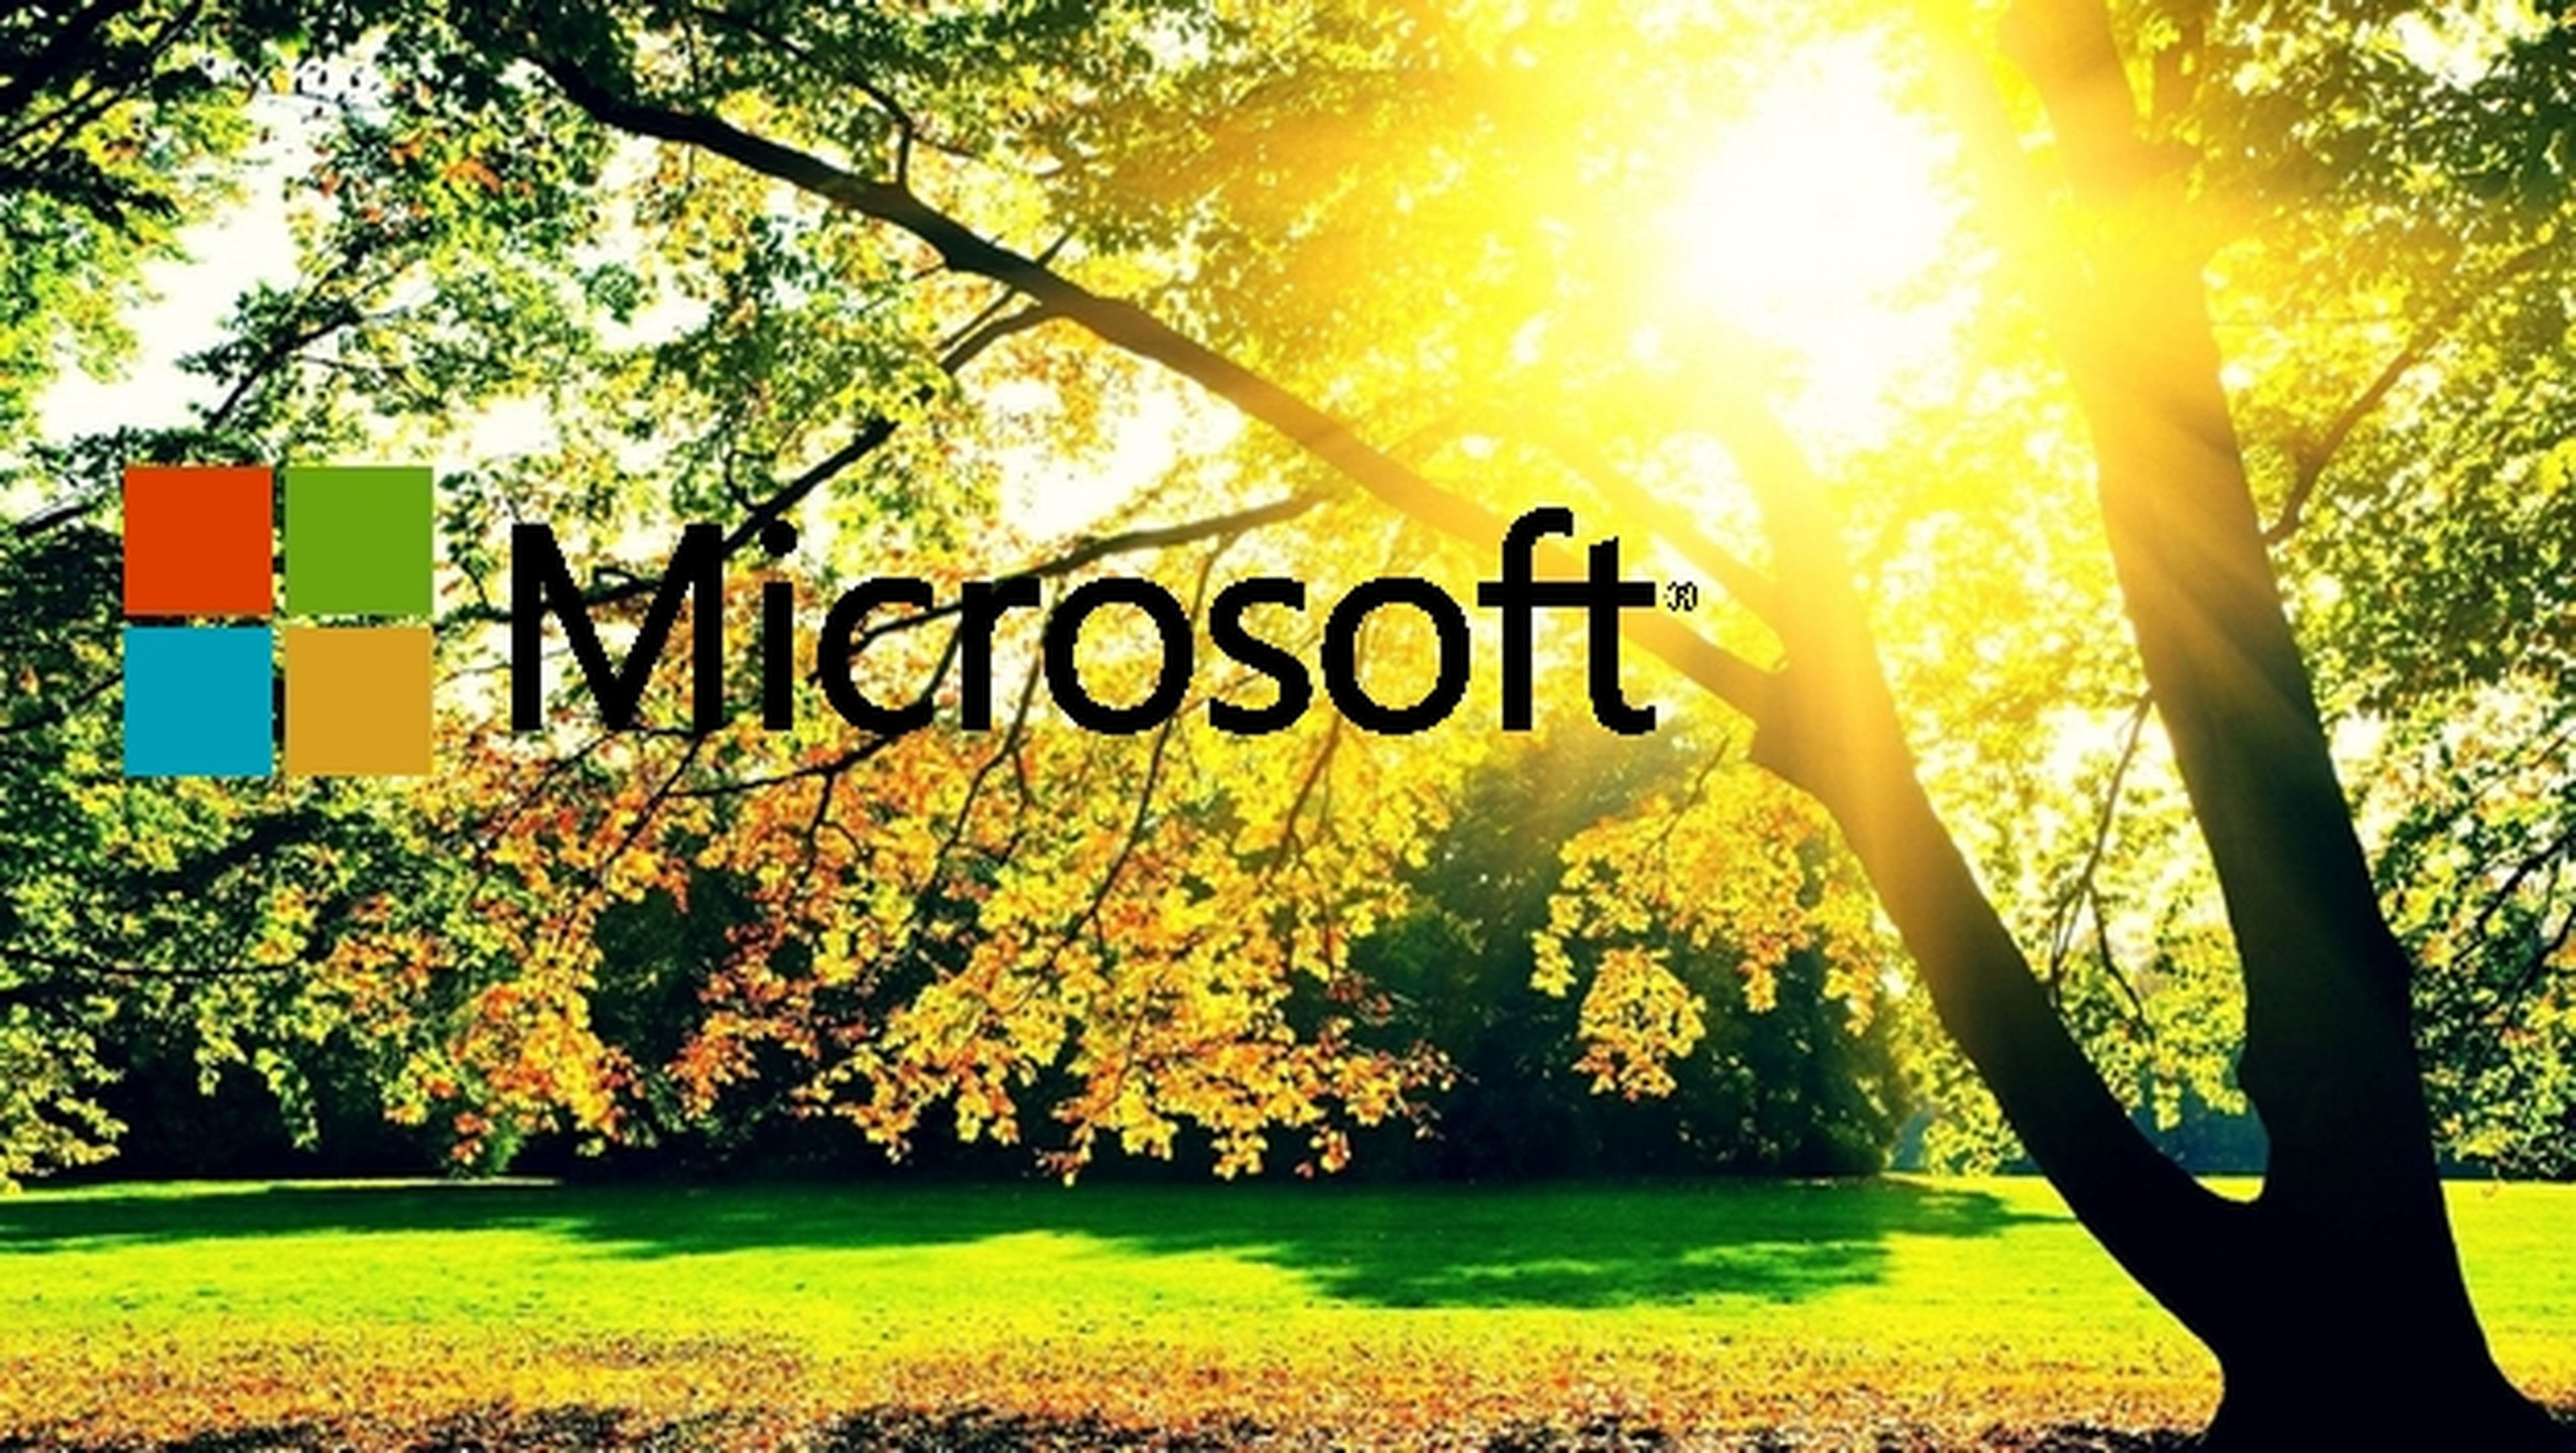 Microsoft evoluciona: Windows 8 gratis y WinJS en código abierto